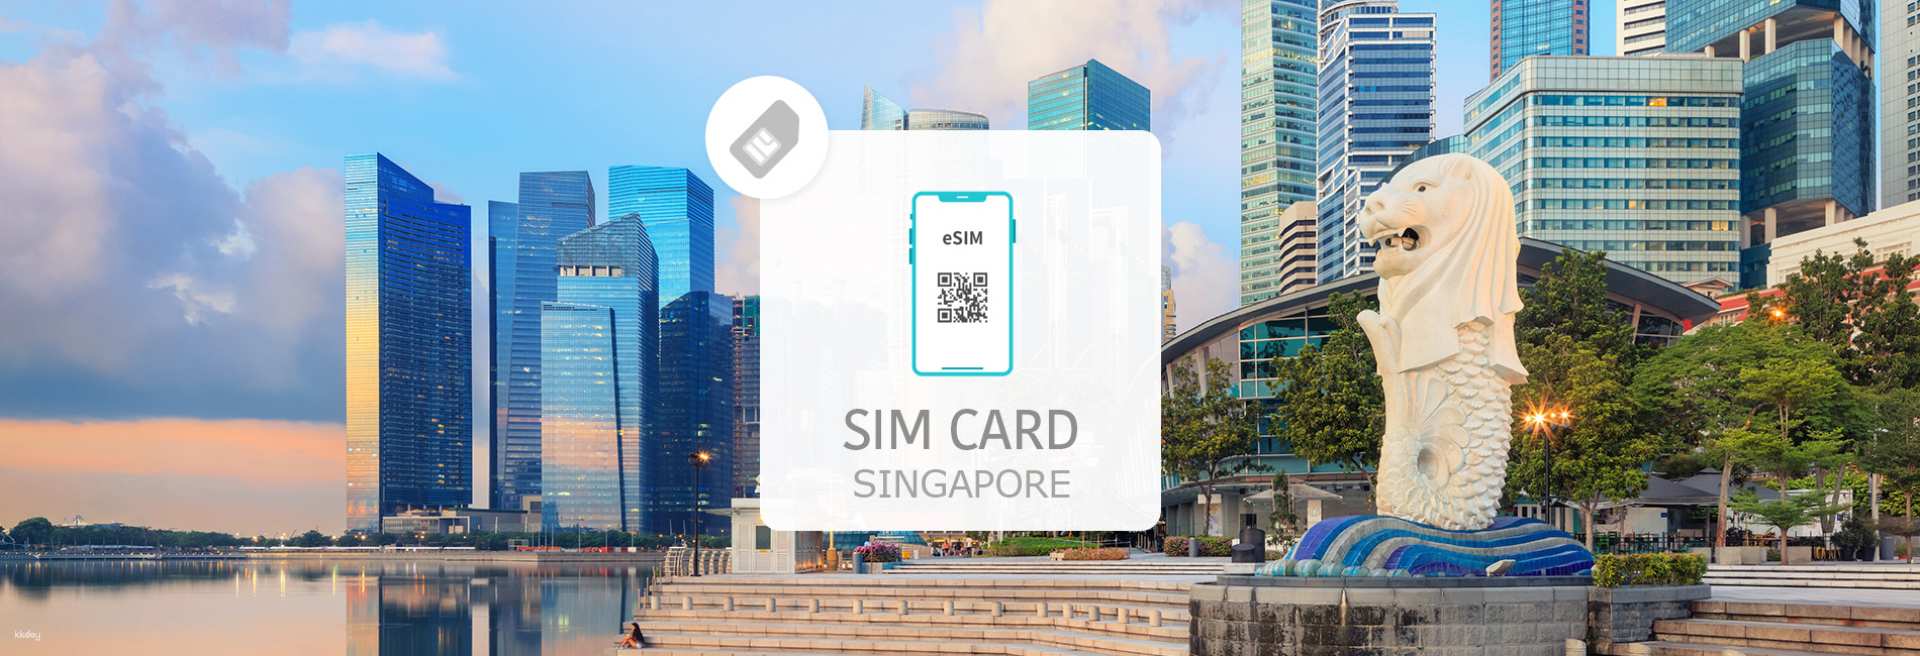 新加坡-數據無限 eSIM